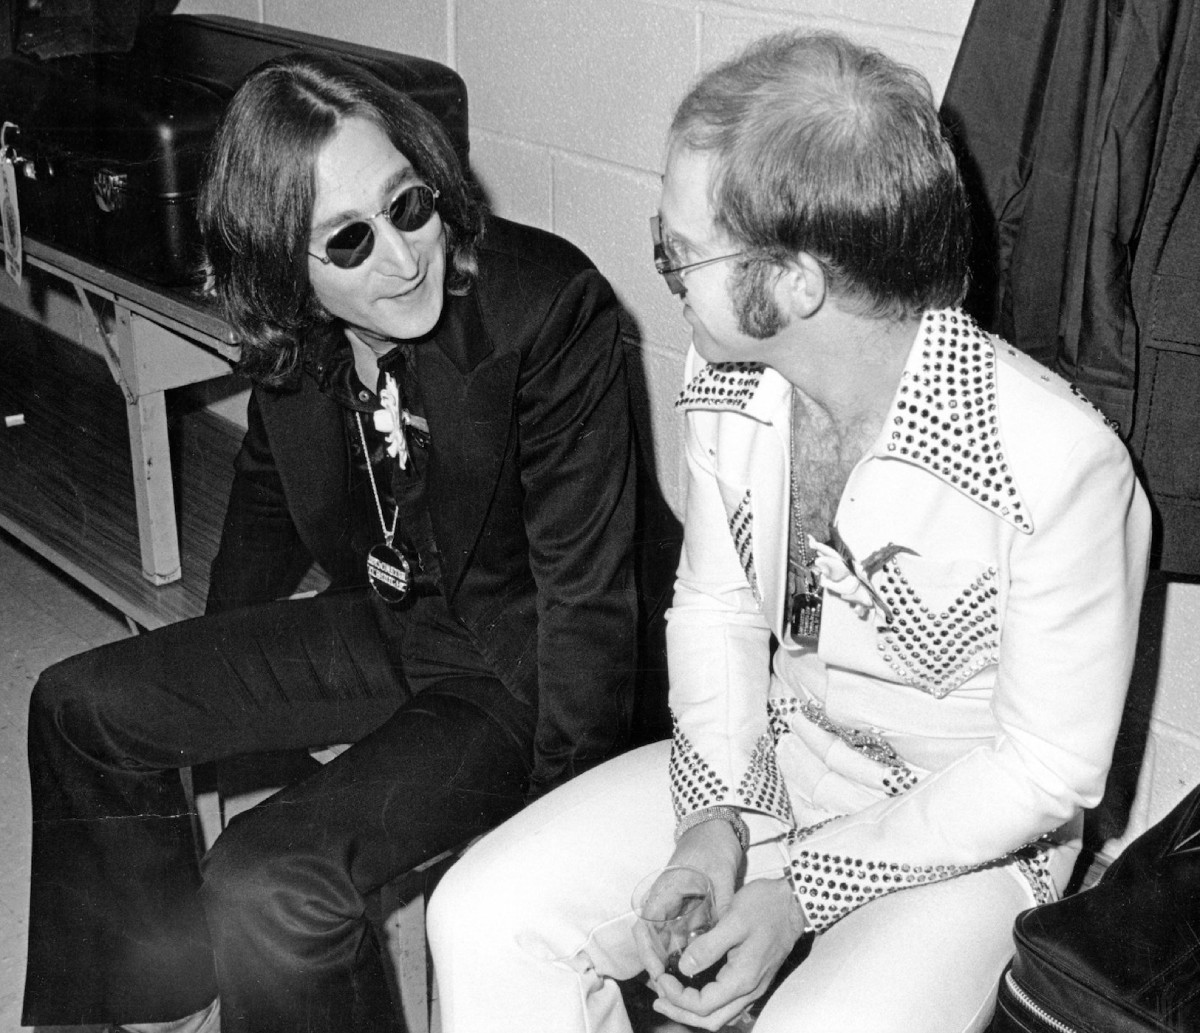 约翰列侬和埃尔顿约翰是朋友……